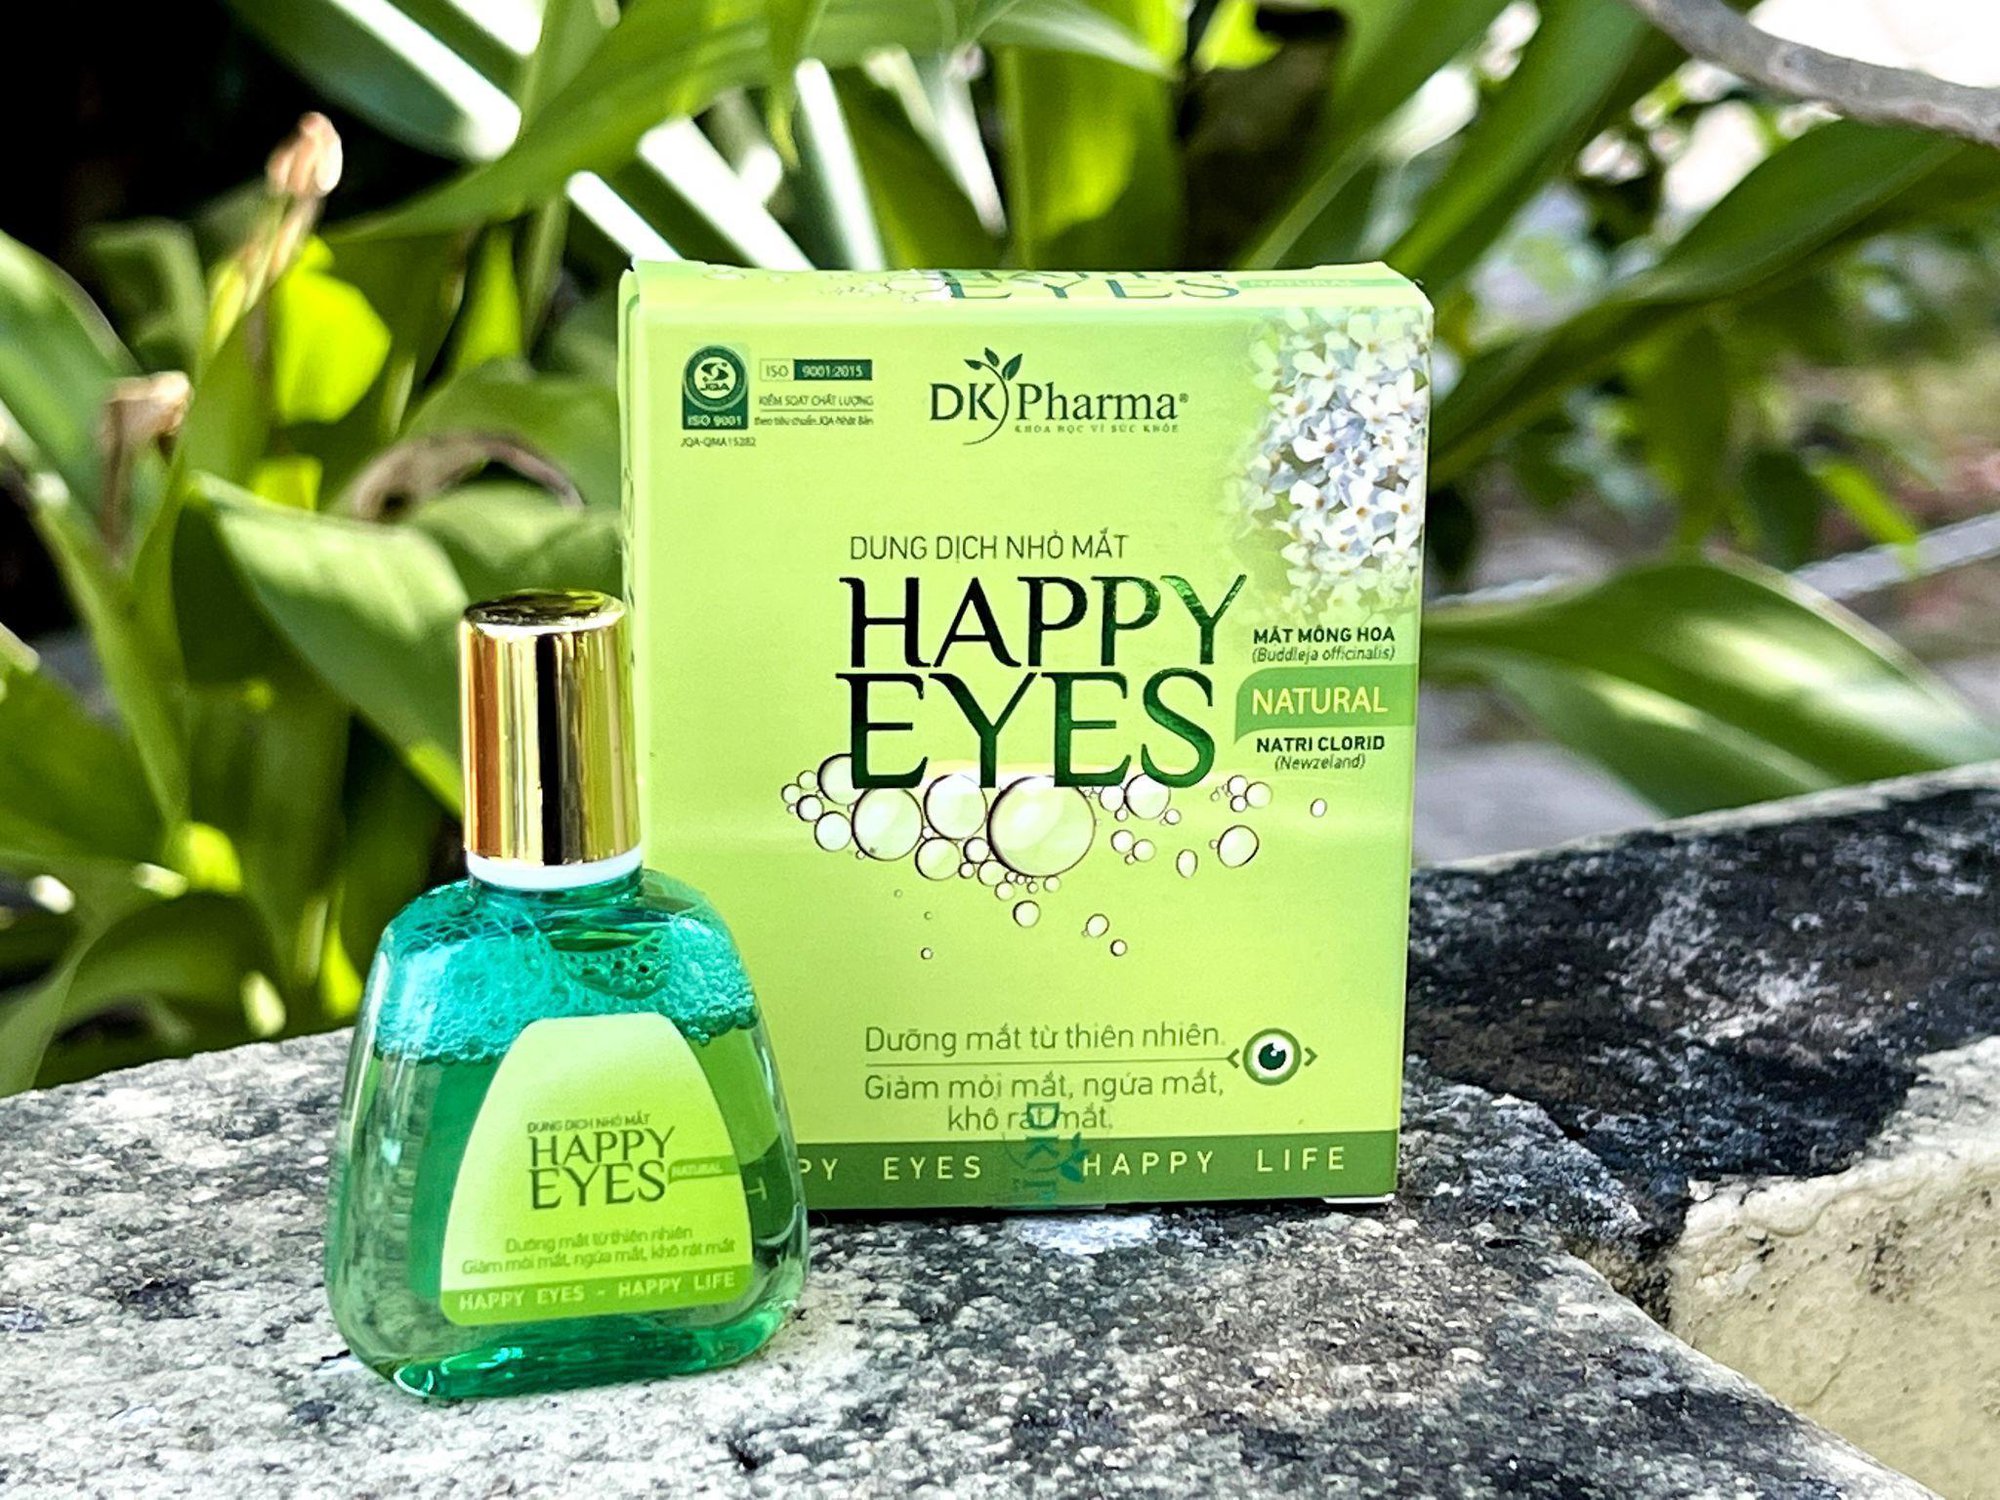 Giải pháp Happy Eyes Natural giúp dưỡng mắt mát lành tự nhiên - ảnh 3